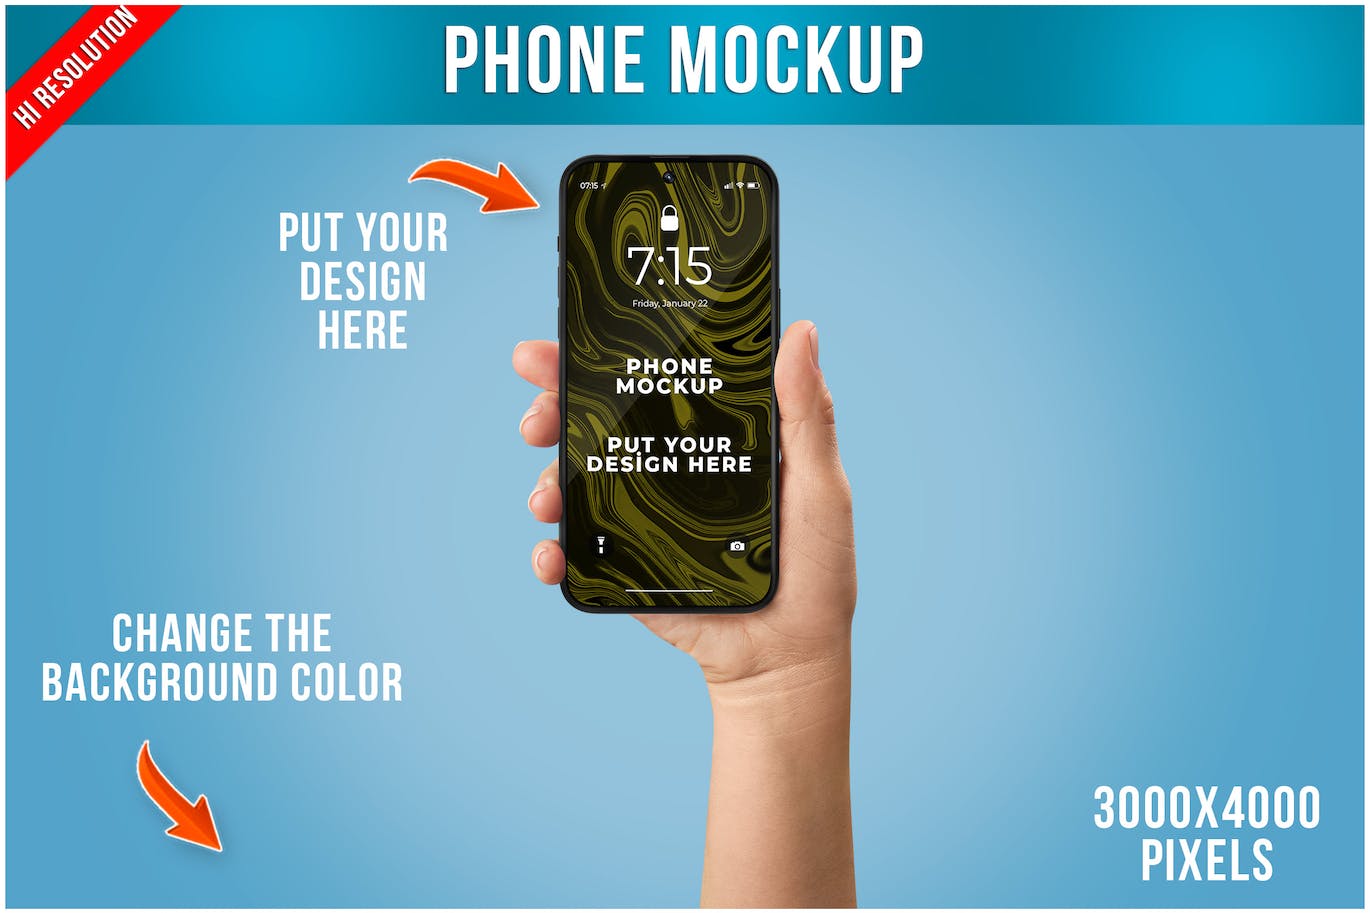 女性手拿智能手机UI展示样机模板 Phone Mockup in Woman Hand Template 样机素材 第1张